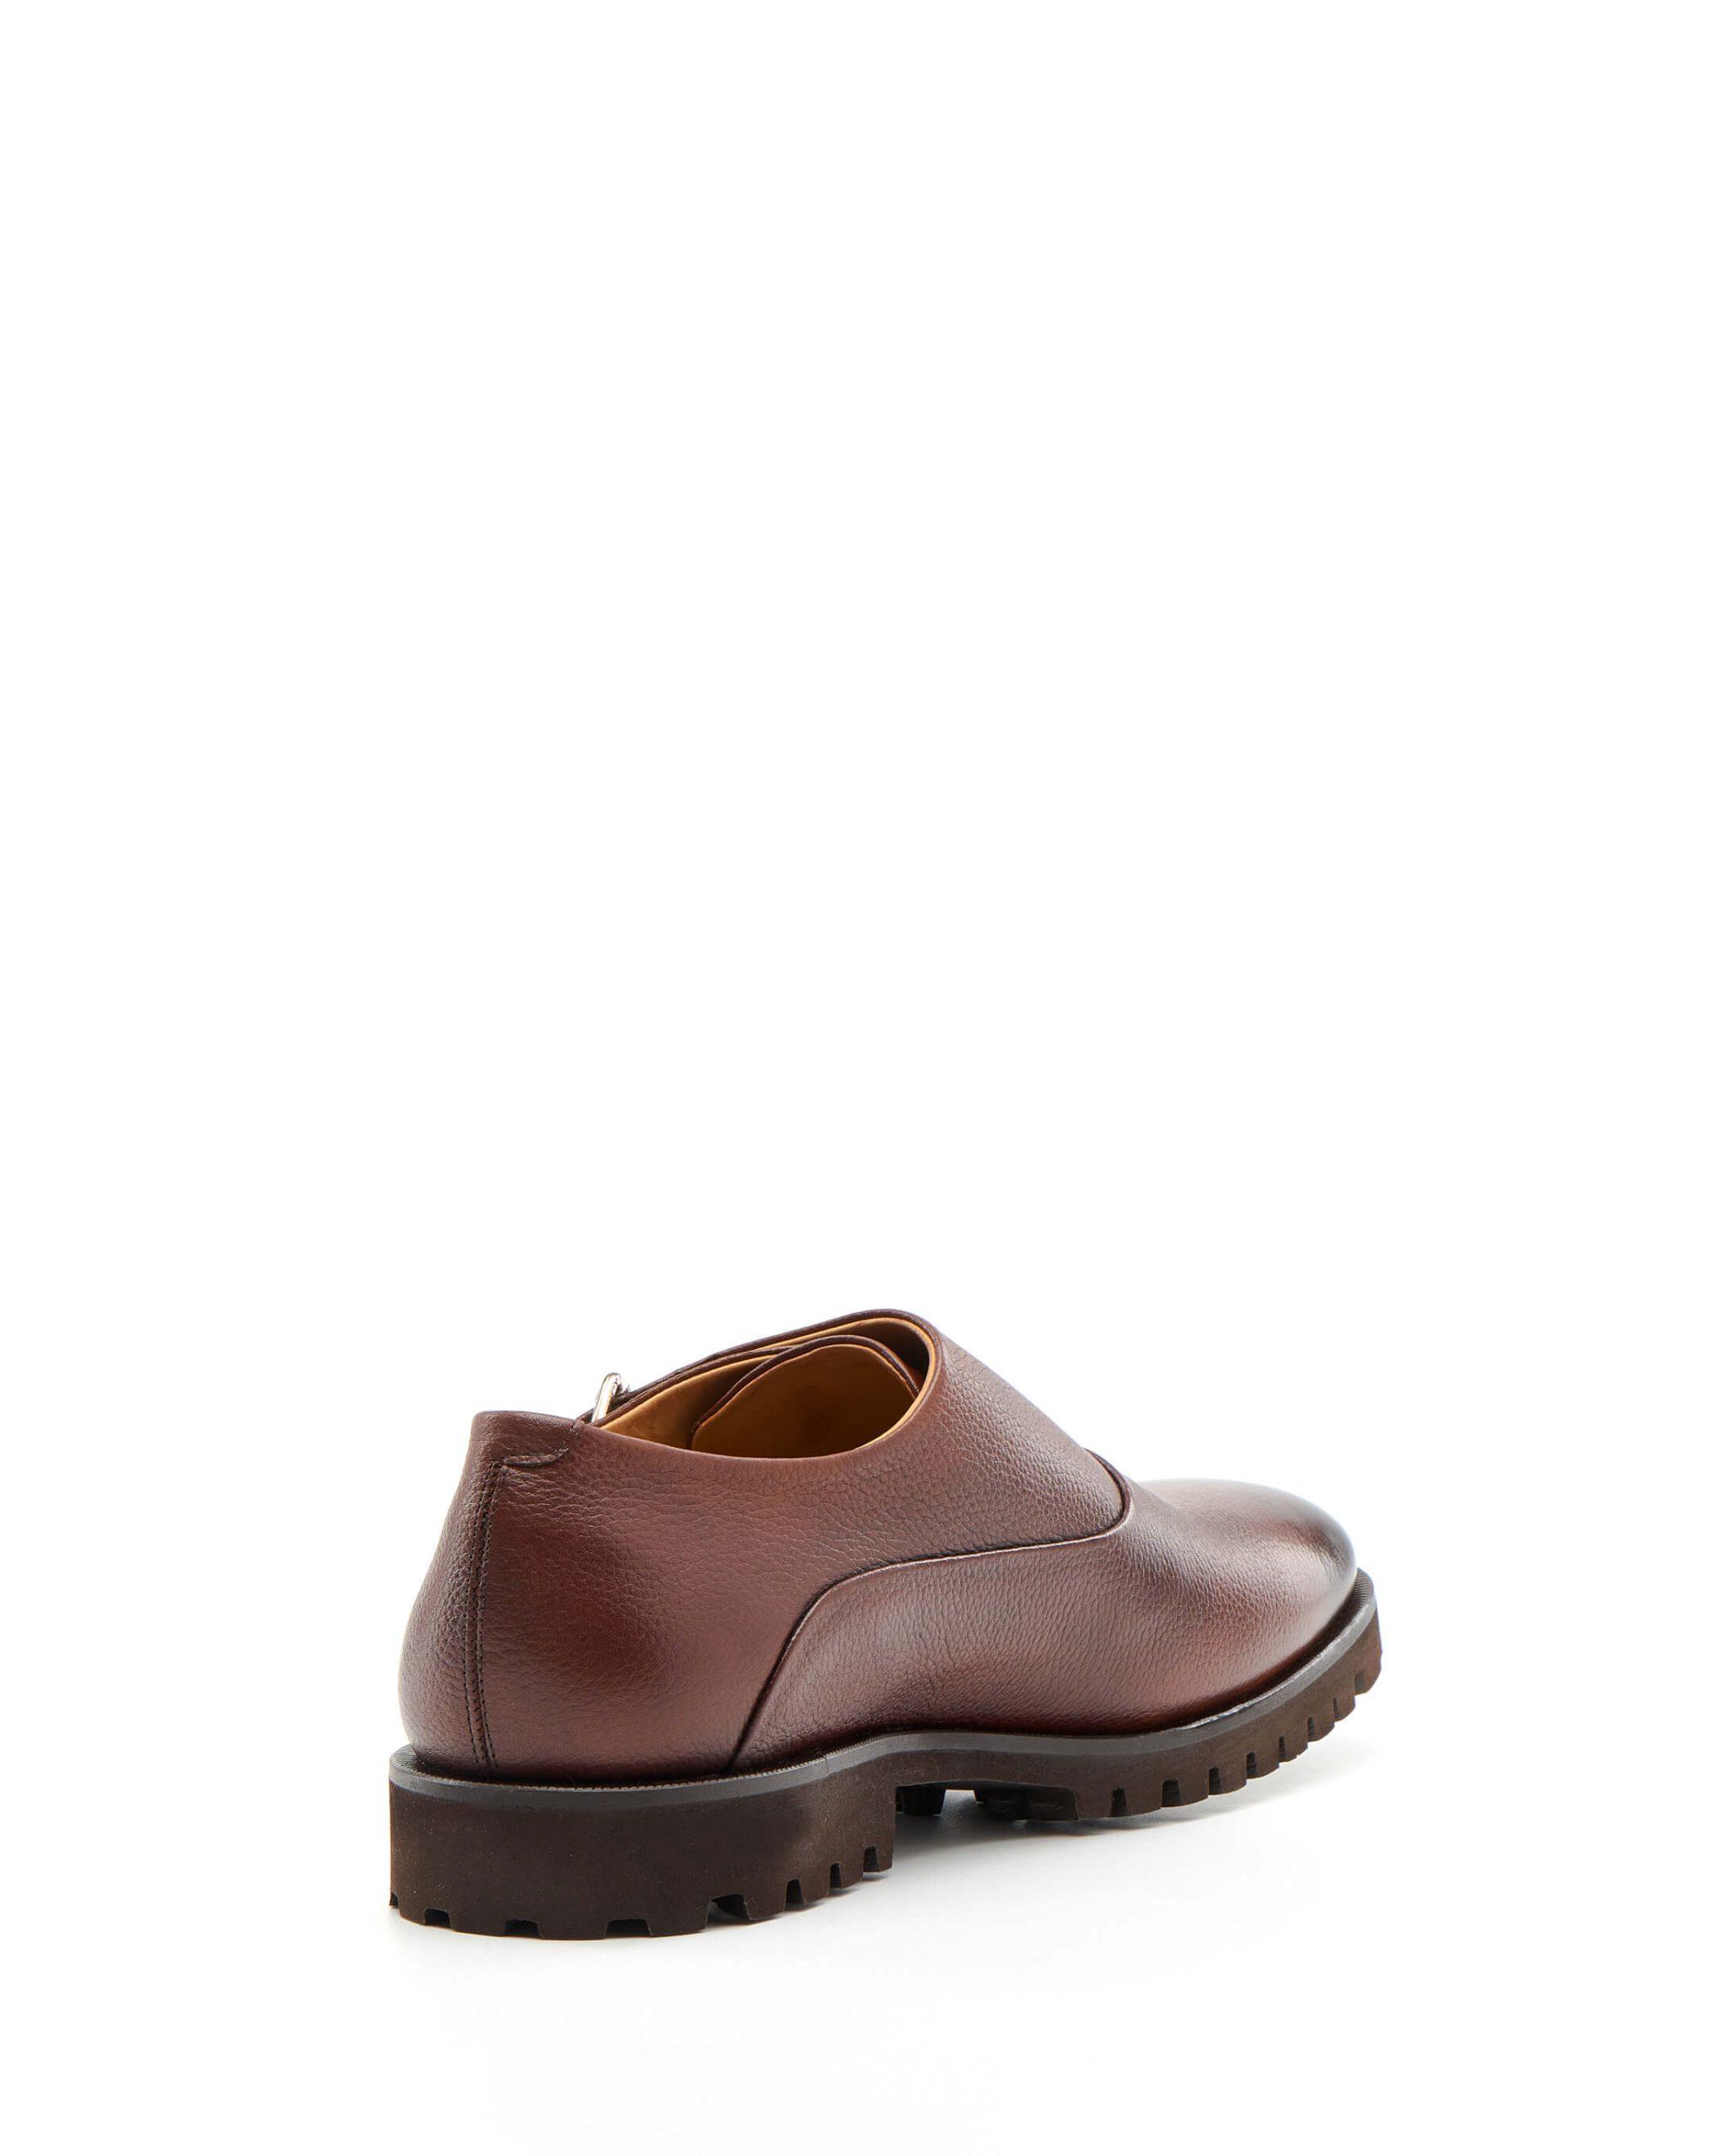 Luis Onofre Portuguese Shoes FW22 – HS0804_02 – Cozy Light brown-6